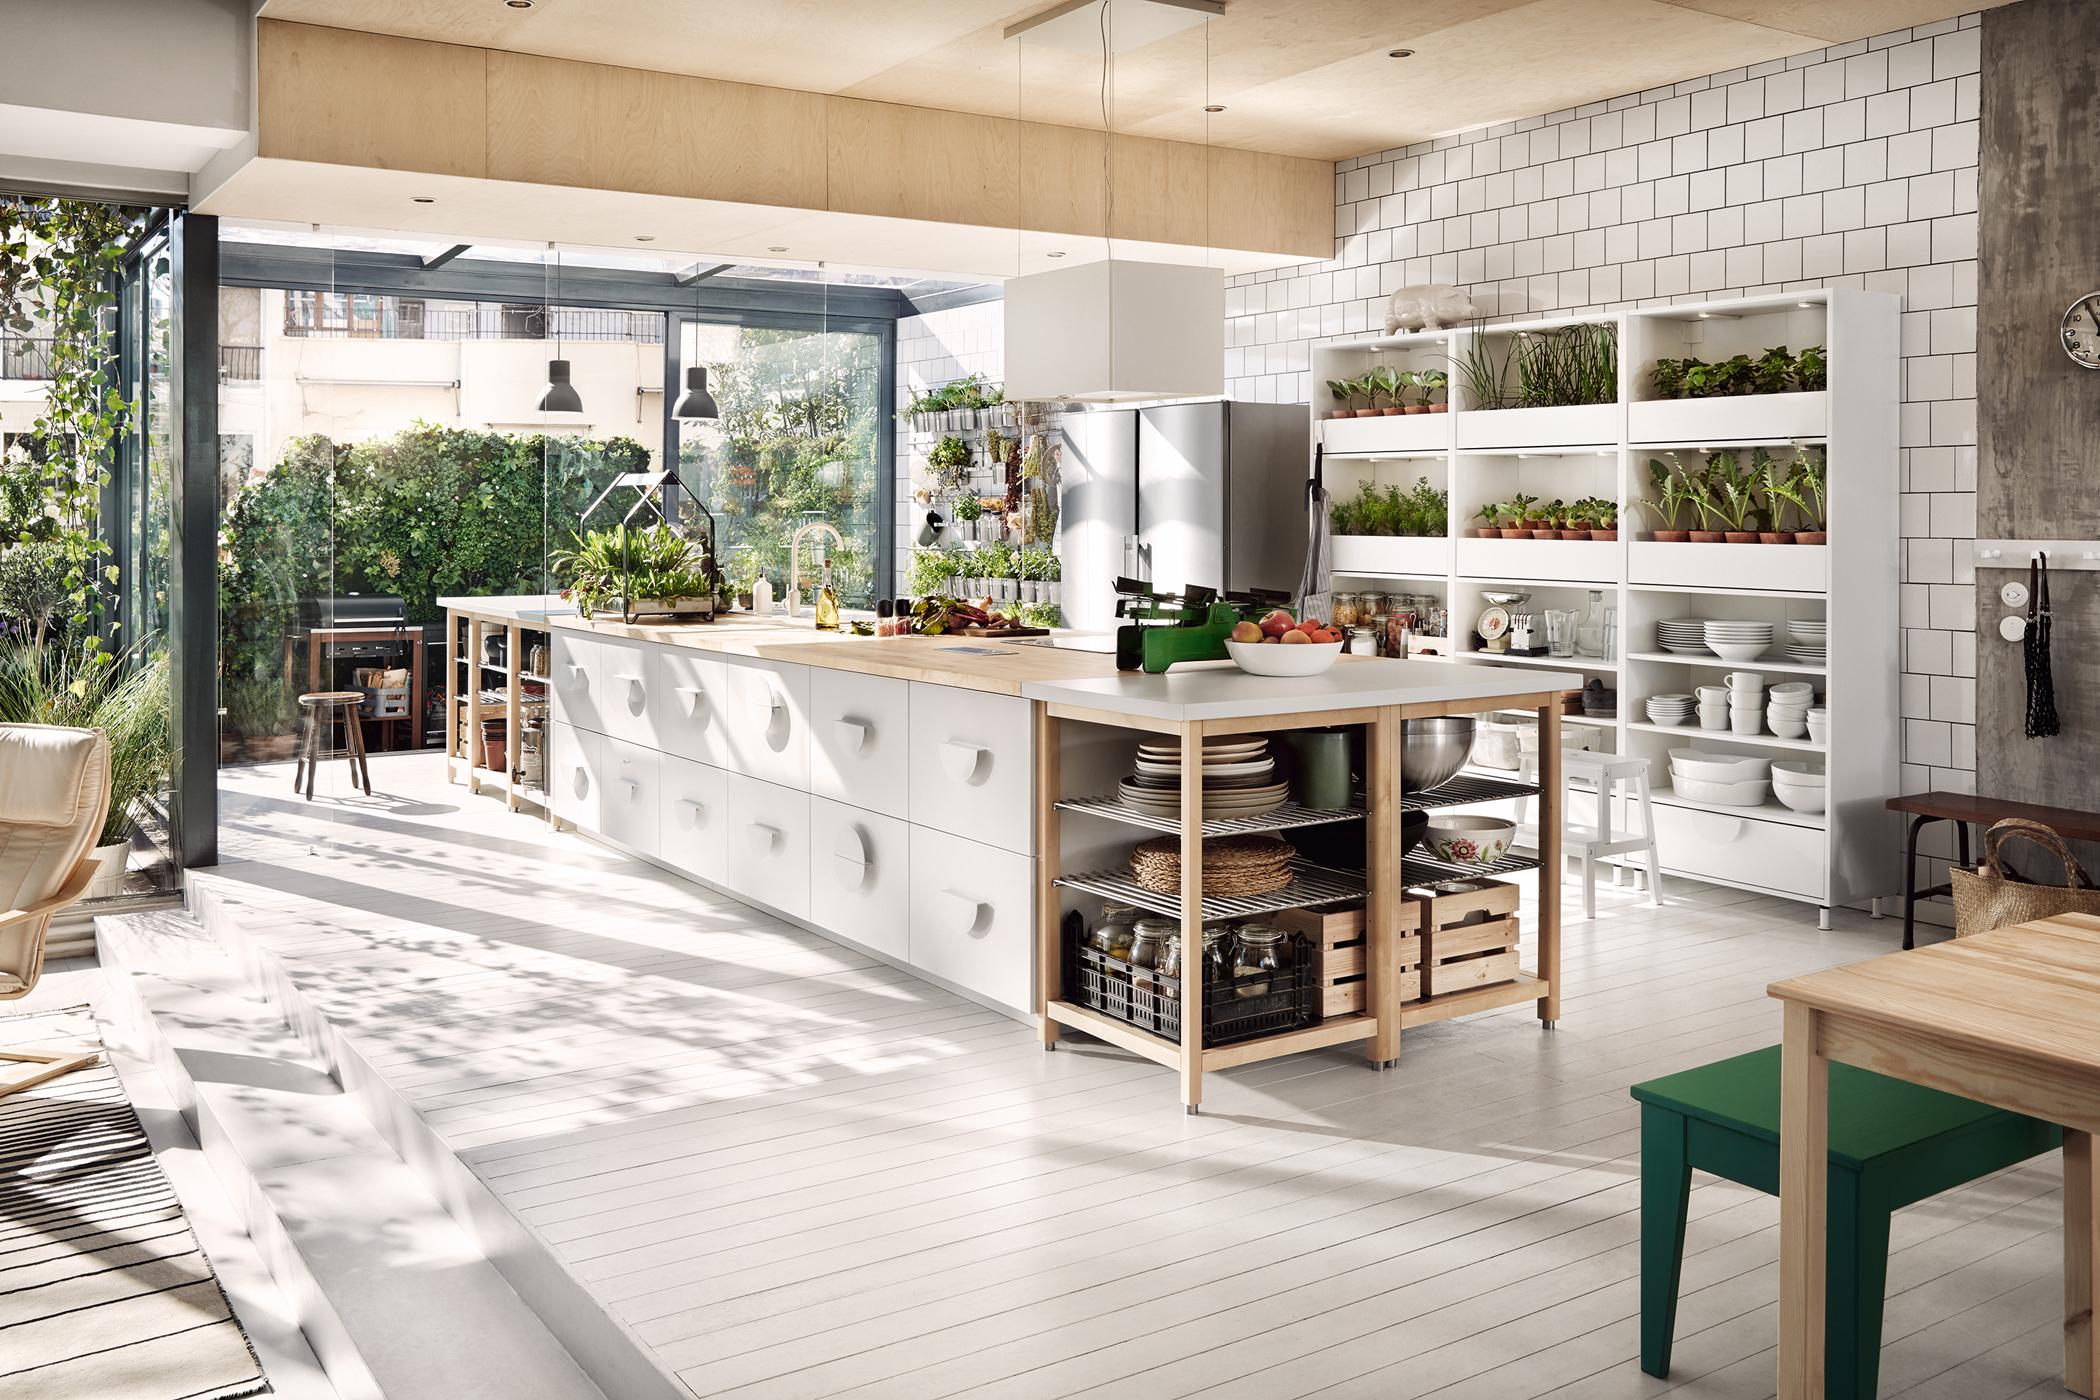 Küche mit Dekopflanzen bestücken #regal #ikea #pendelleuchte #kücheninsel #offeneküche #weißekücheninsel #kräuteraufbewahrung #zimmergestaltung ©Inter IKEA Systems B.V.